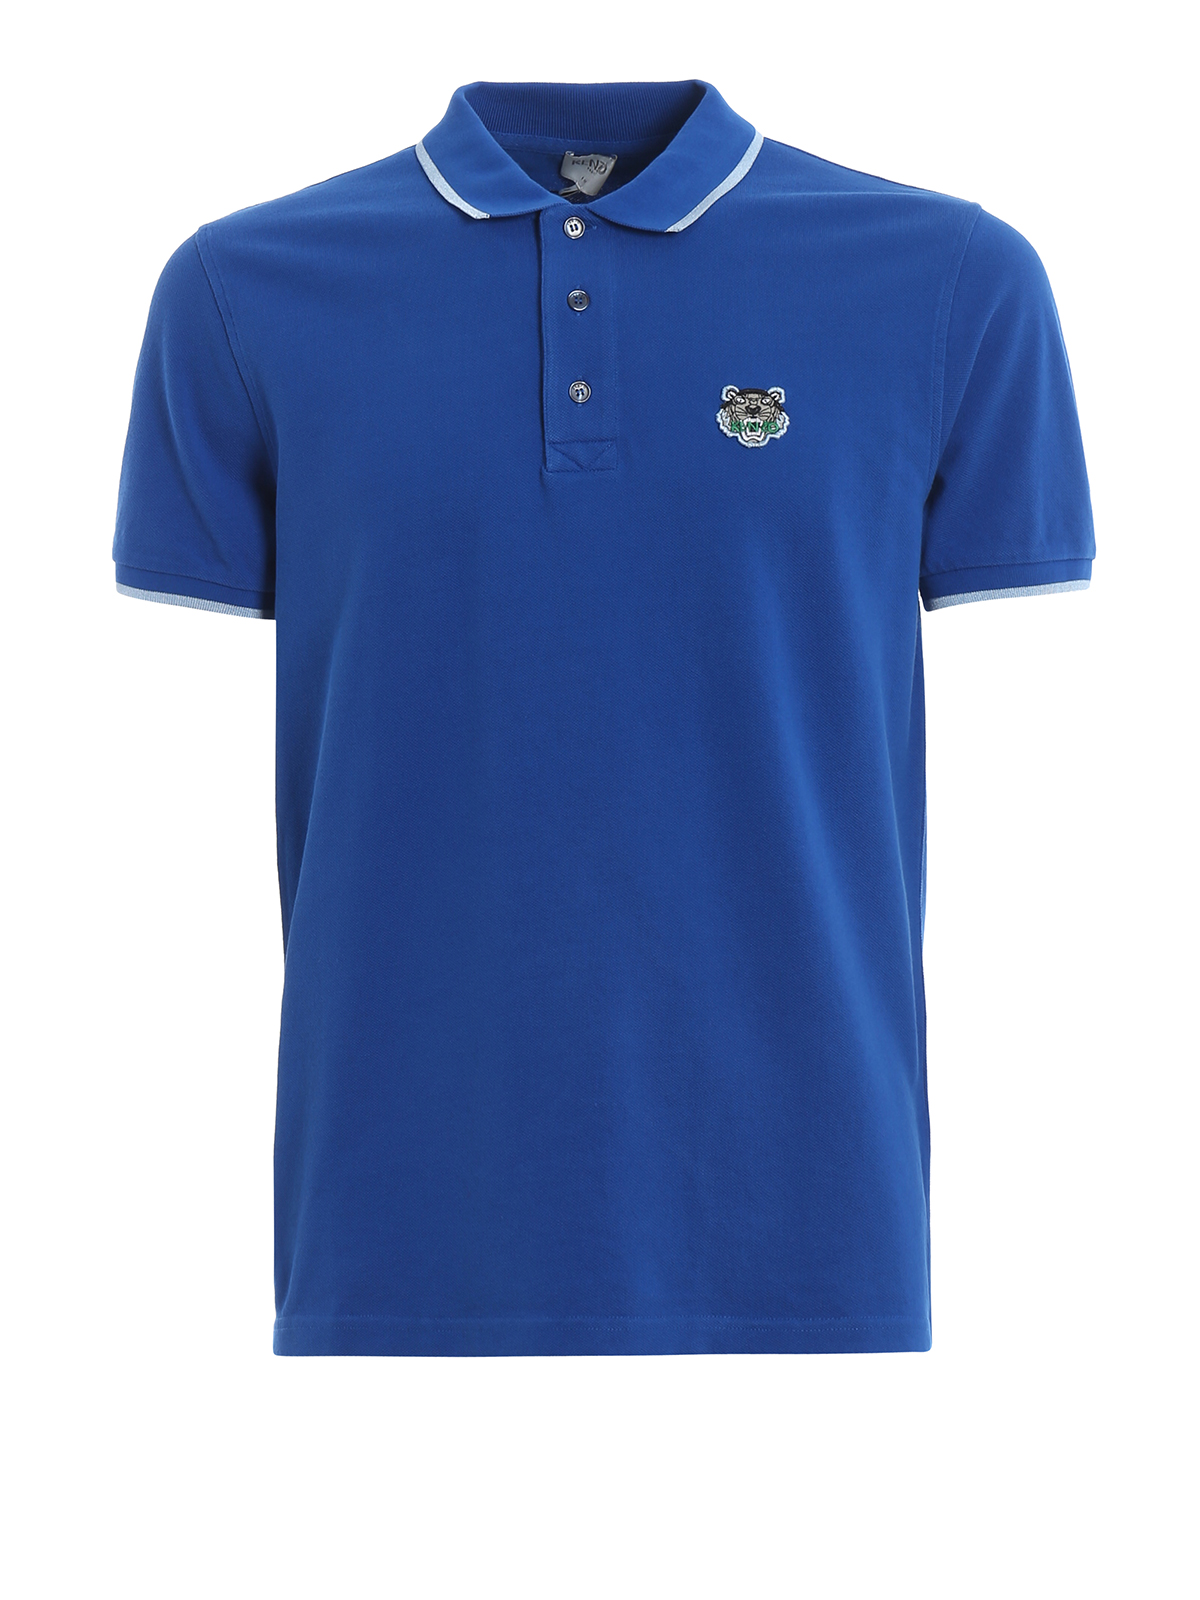 Fit Tiger crest blue cotton polo shirt 